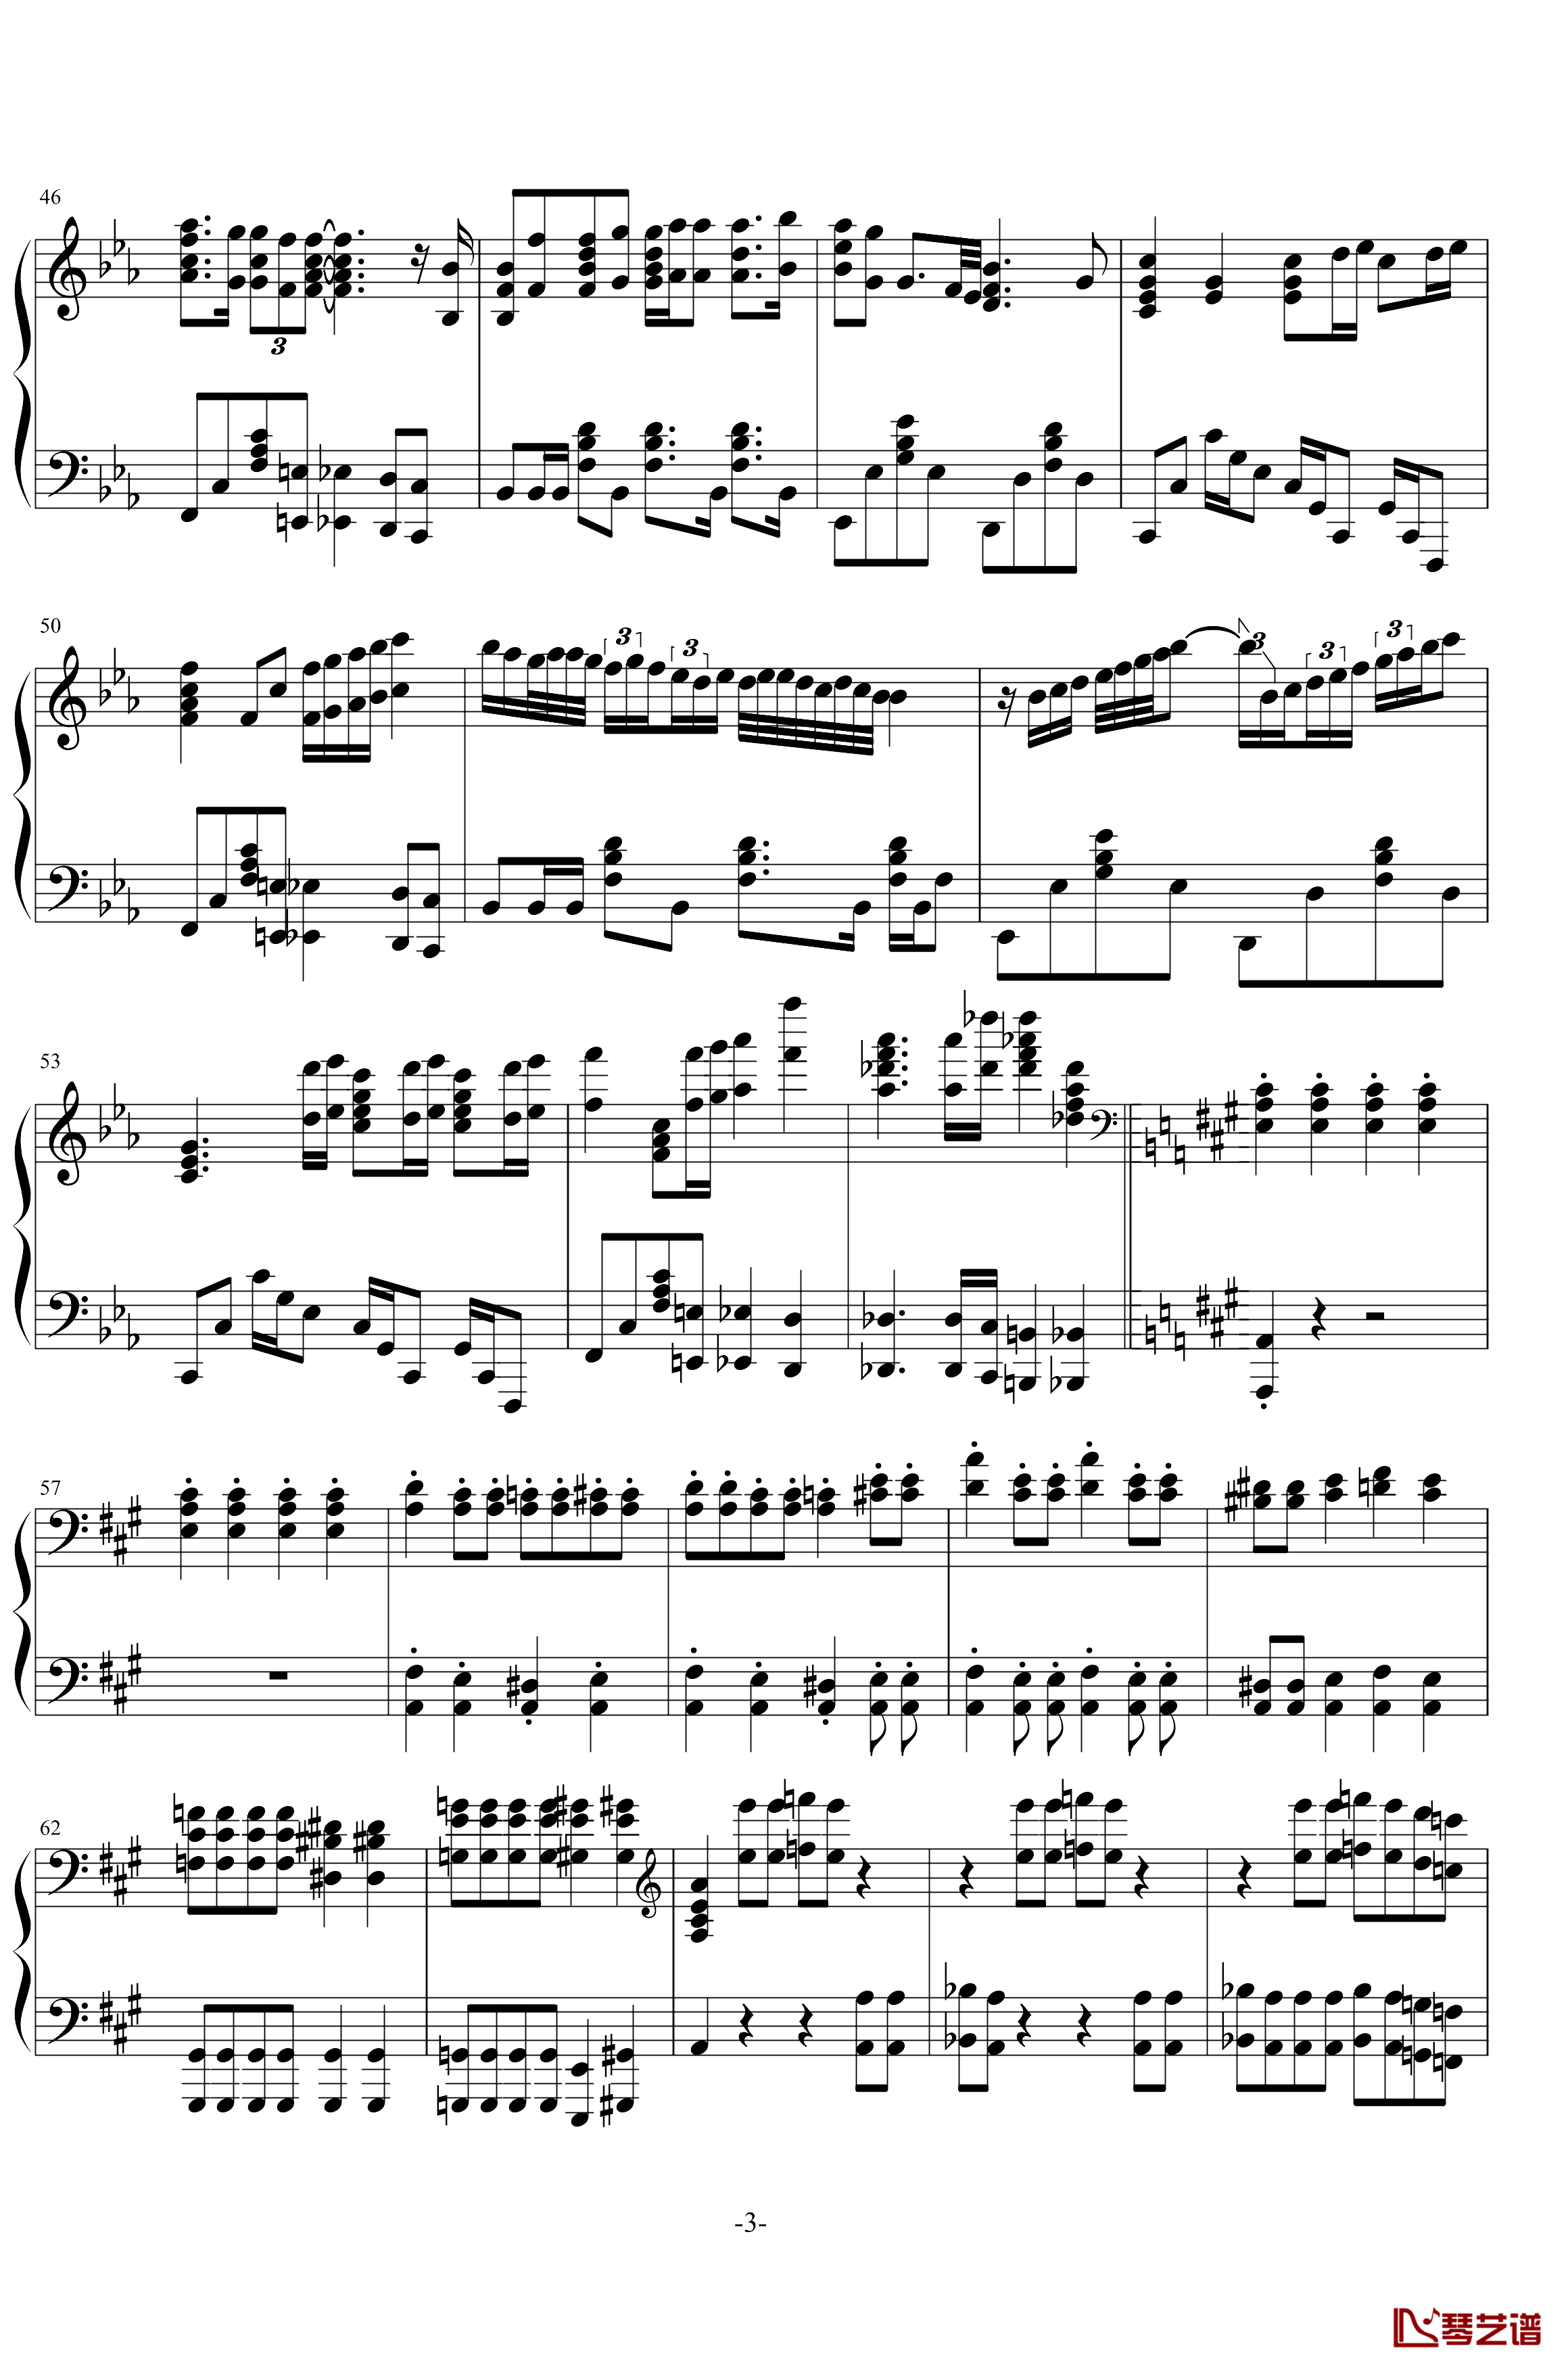 波西米亚狂想曲钢琴谱-Queen3